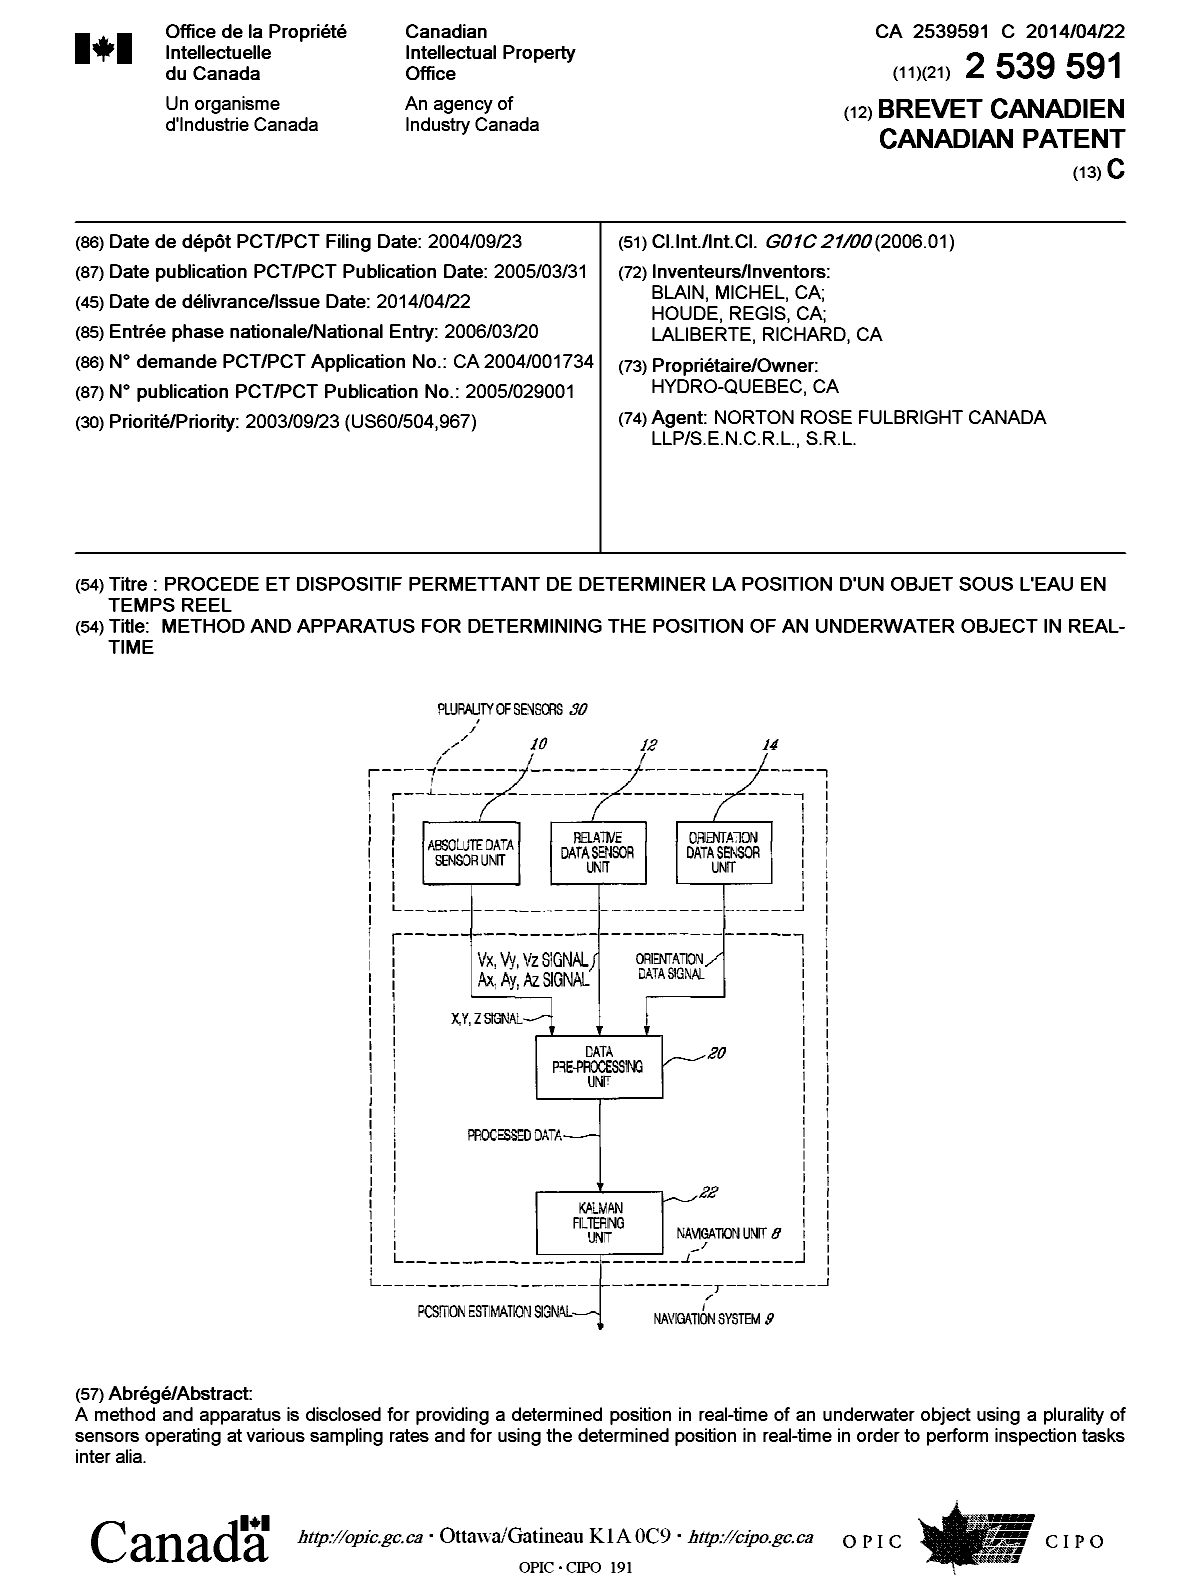 Document de brevet canadien 2539591. Page couverture 20131224. Image 1 de 1